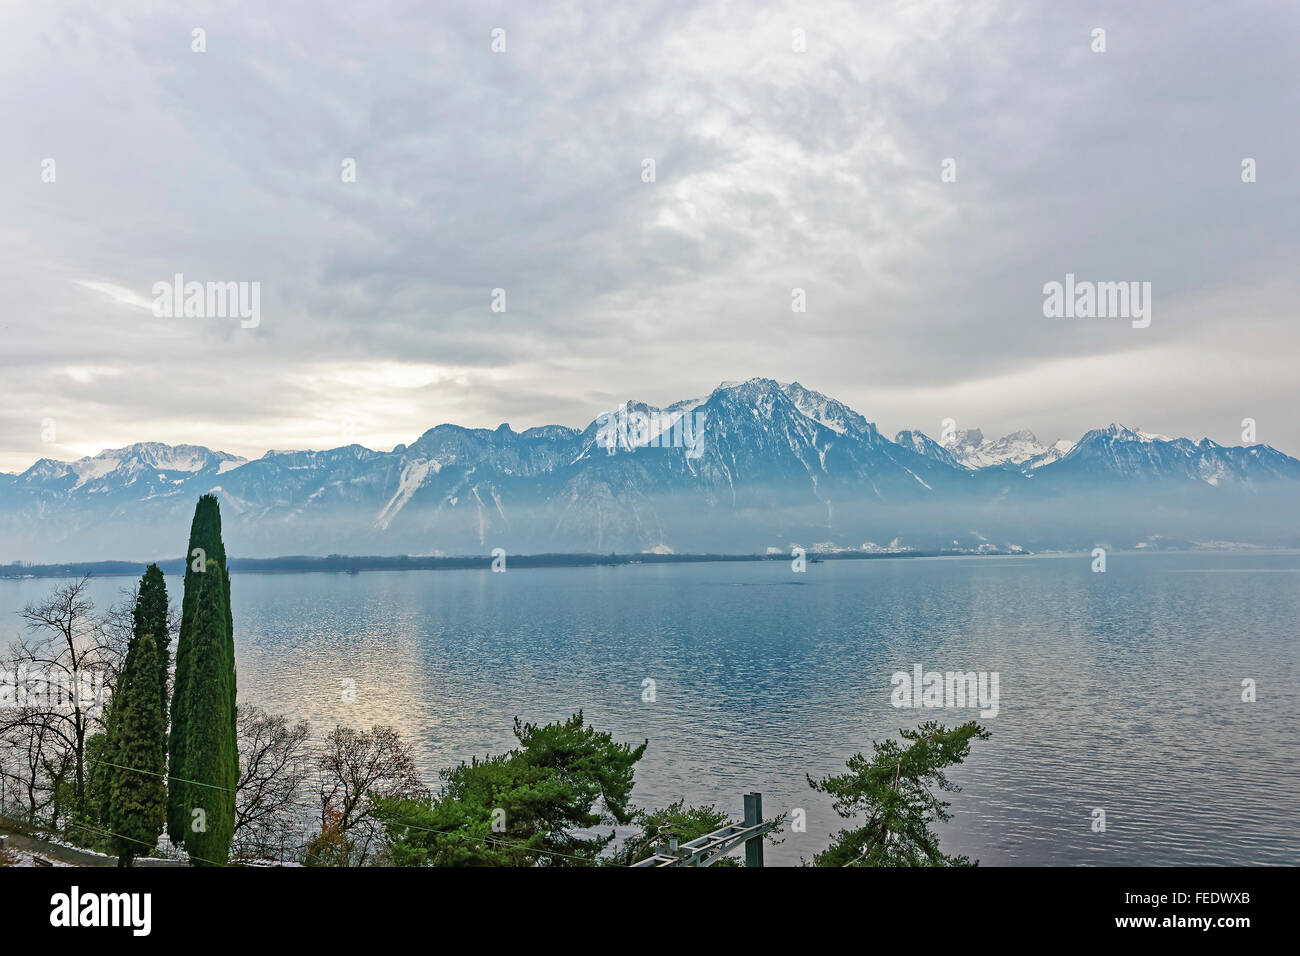 Le lac de Genève Vue de Montreux en Suisse en hiver. Le lac de Genève est  un lac sur le côté nord des Alpes, entre la Suisse et la France. C'est l'un